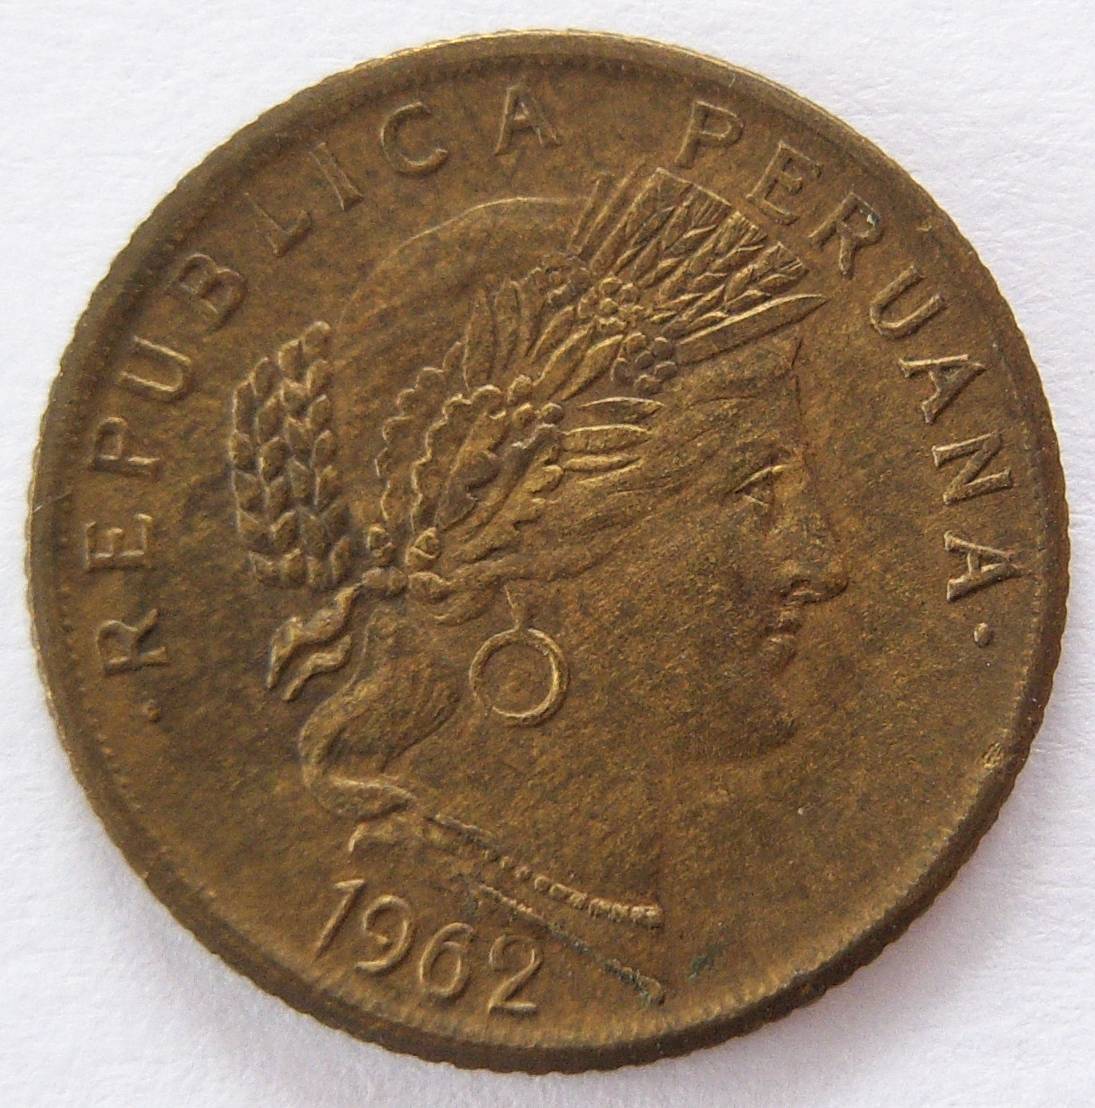  Peru 10 Centavos 1962   